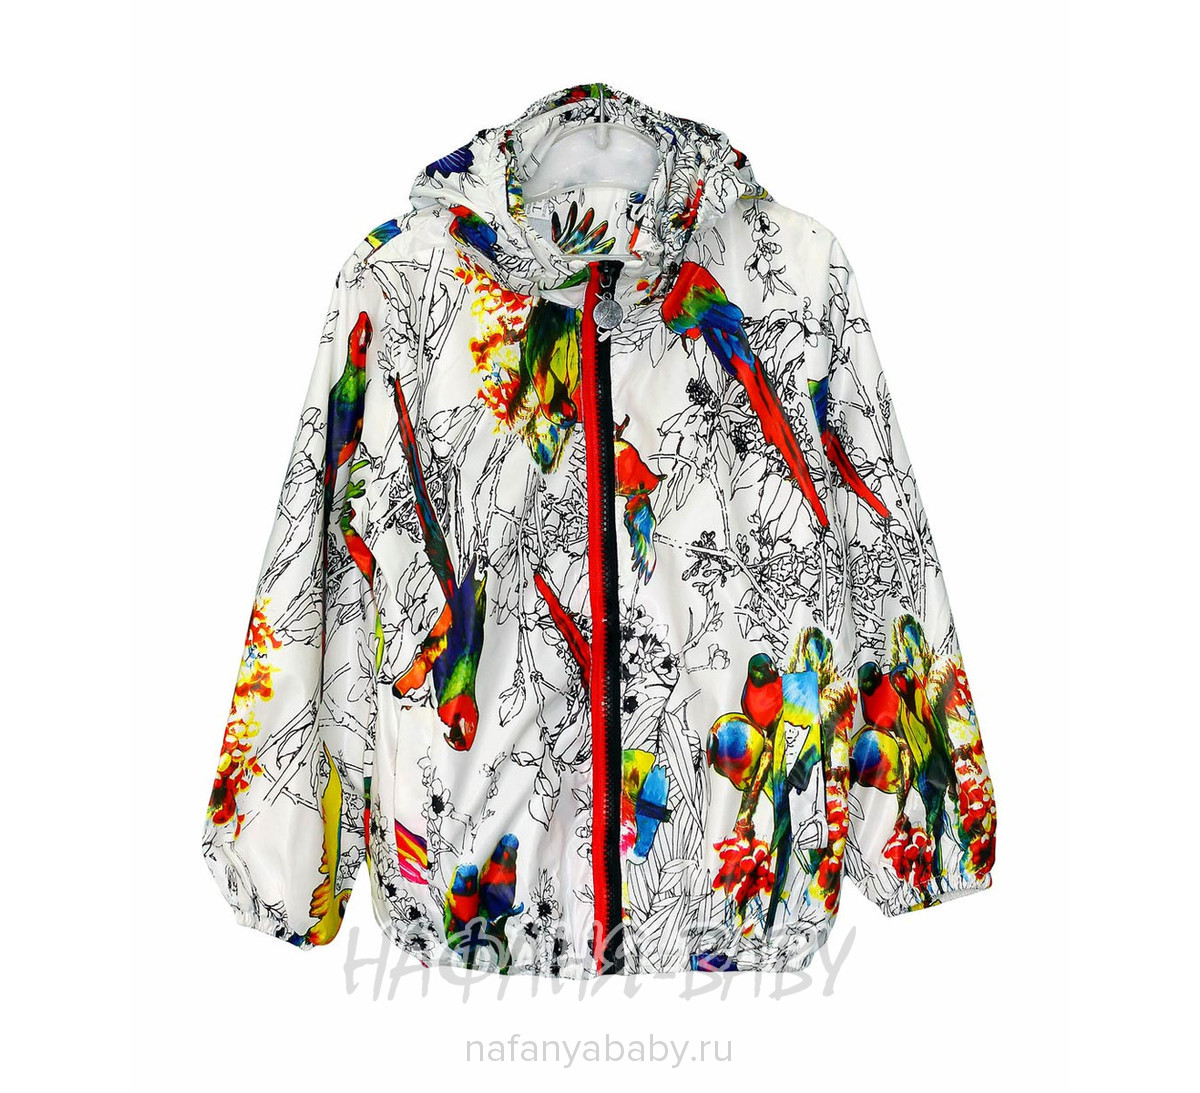 Детская куртка-ветровка YQGG, купить в интернет магазине Нафаня. арт: 018.